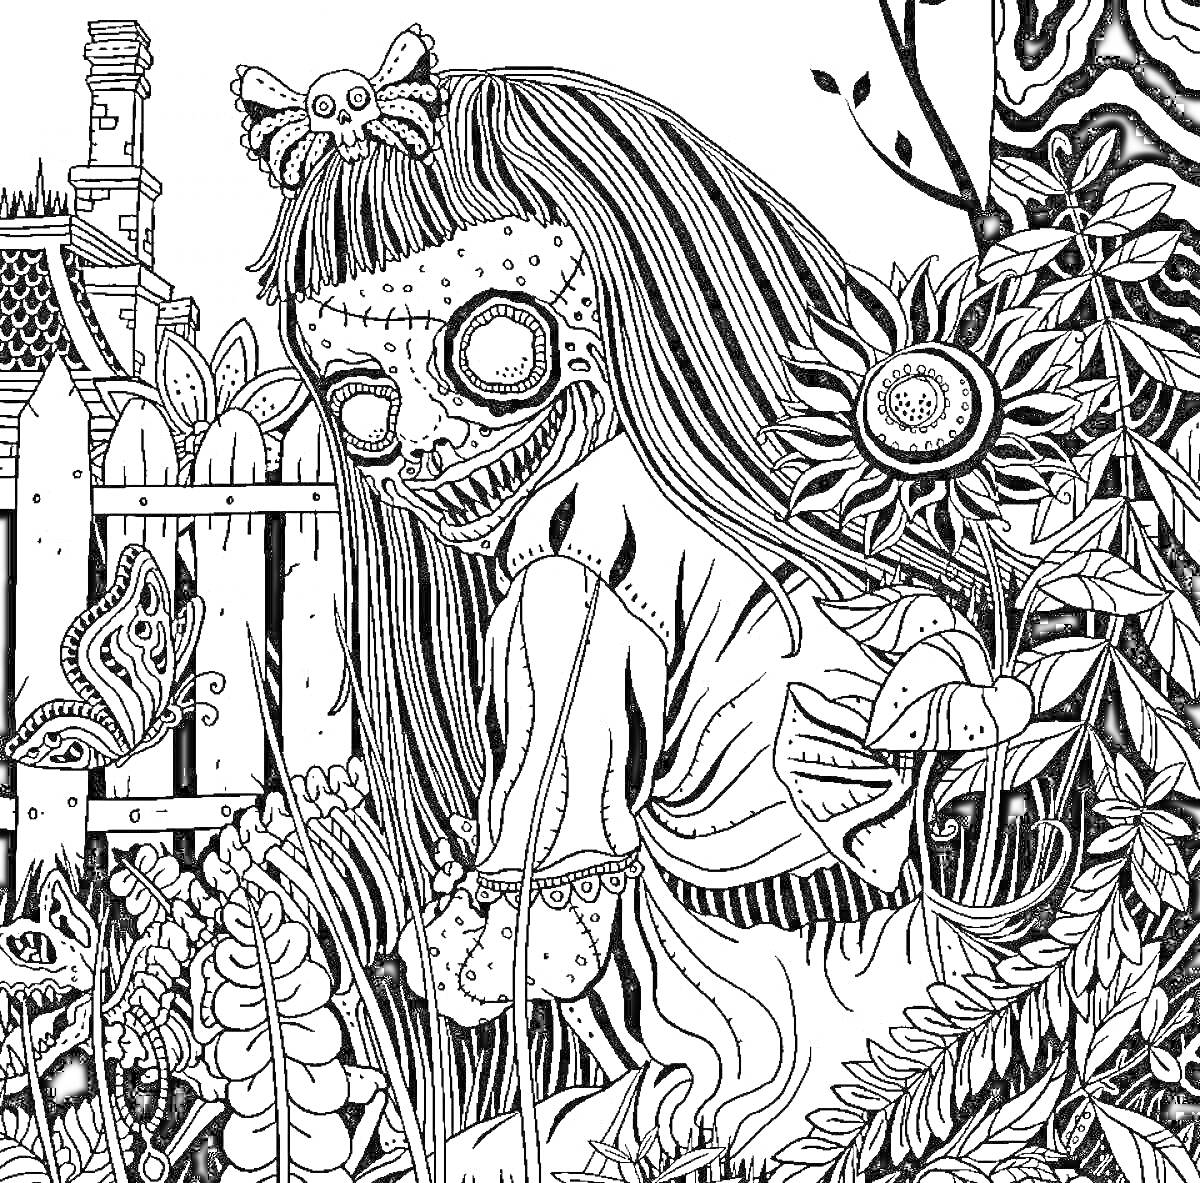 Раскраска Жуткая кукла в лесу с зашитыми глазами, цветком, бабочками и забором на заднем плане.